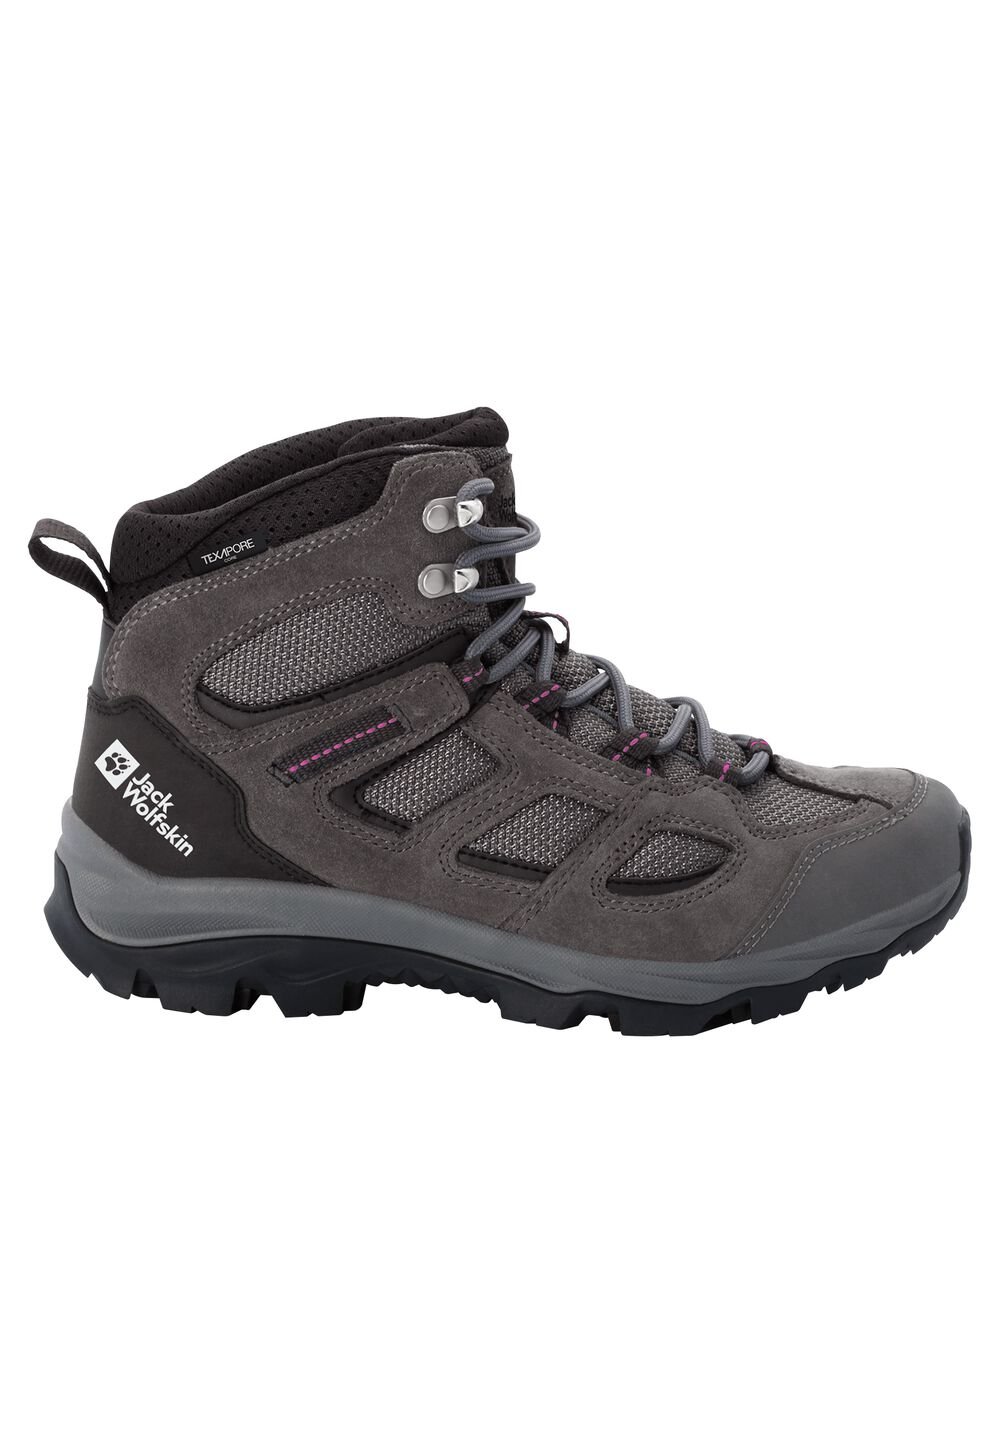 Chaussures de randonnée imperméables femmes Vojo 3 Texapore Mid Women 4,5 gris tarmac grey / pink